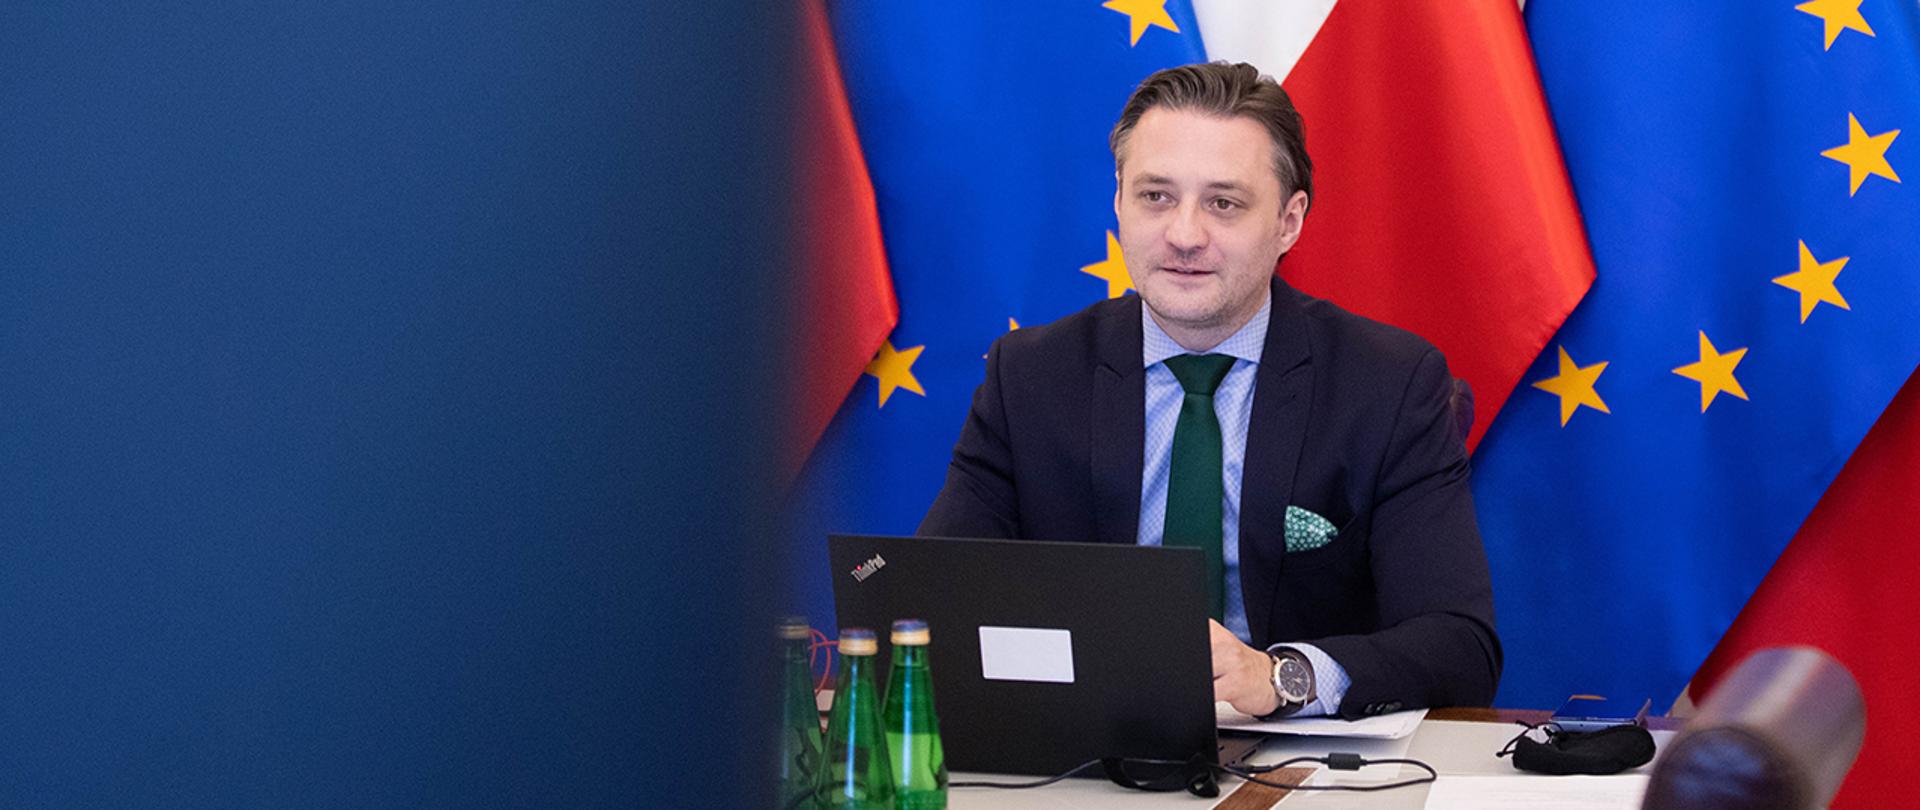 Wiceminister Bartosz Grodecki uczestniczący w Forum Schengen za pośrednictwem wideokonferencji na tle flag Polski i Unii Europejskiej.